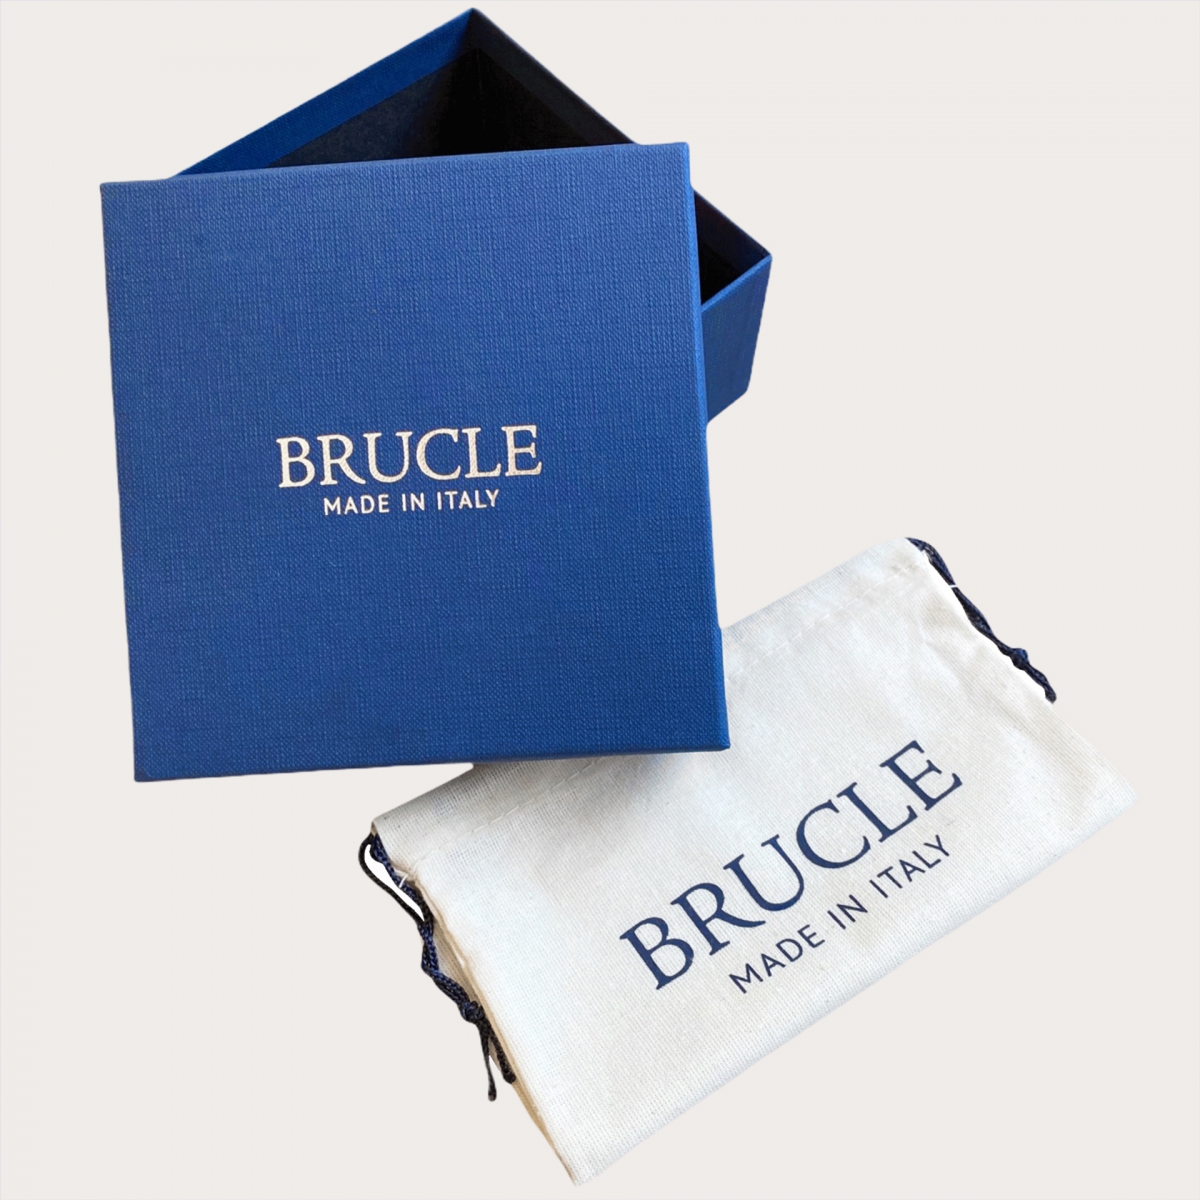 BRUCLE Y-shape leather suspenders, burgundy